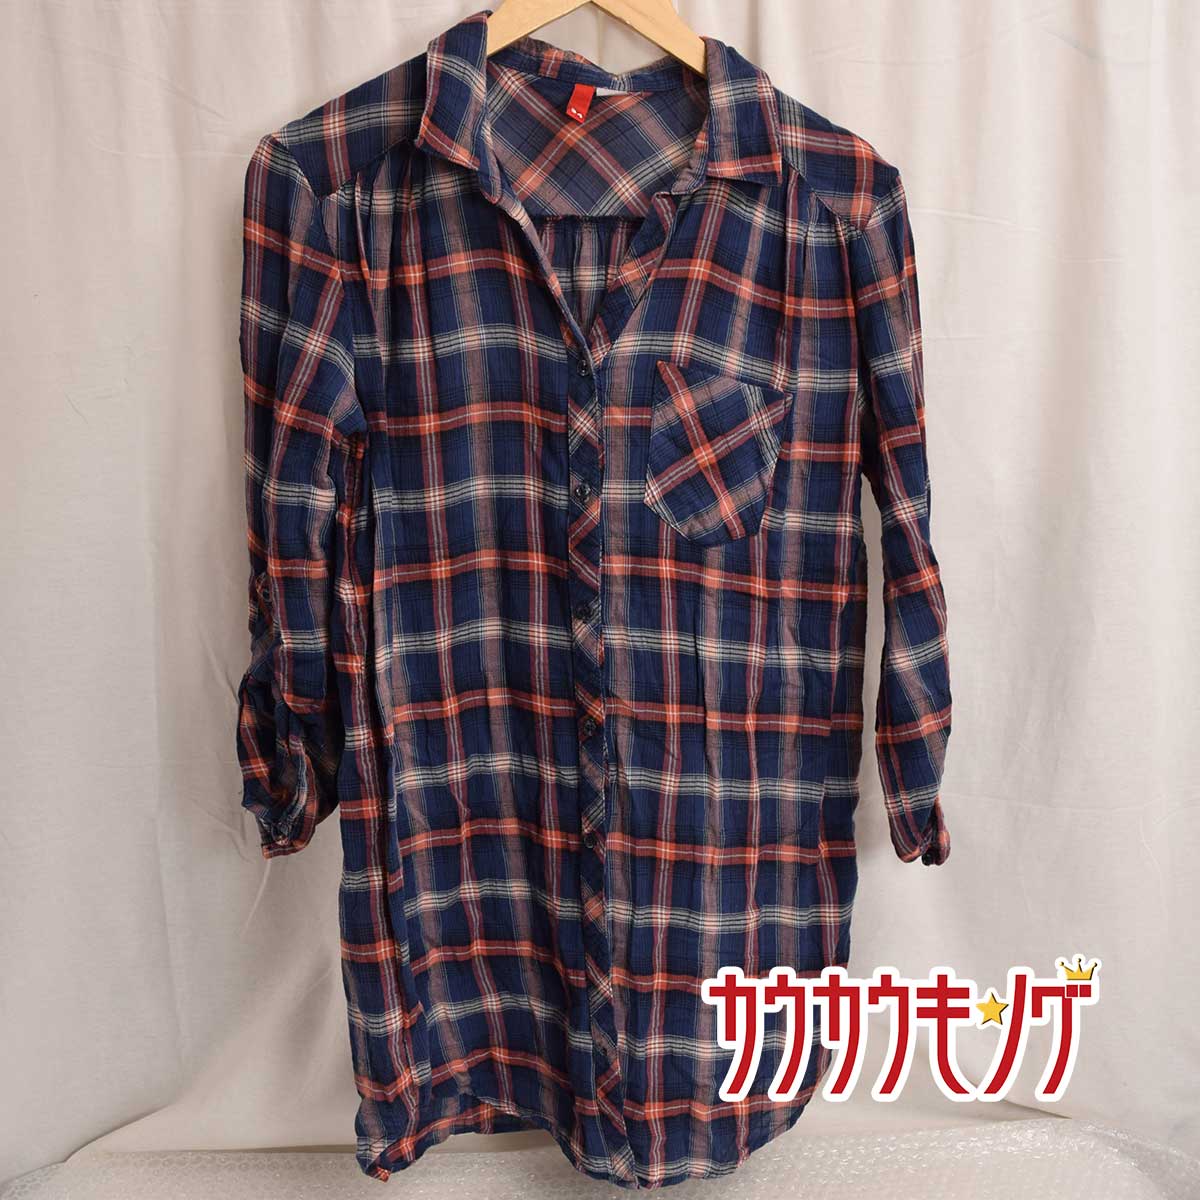 【中古】H&M DIVIDED ロング丈 チェック シャツ 34 ネイビー x オレンジ レディース